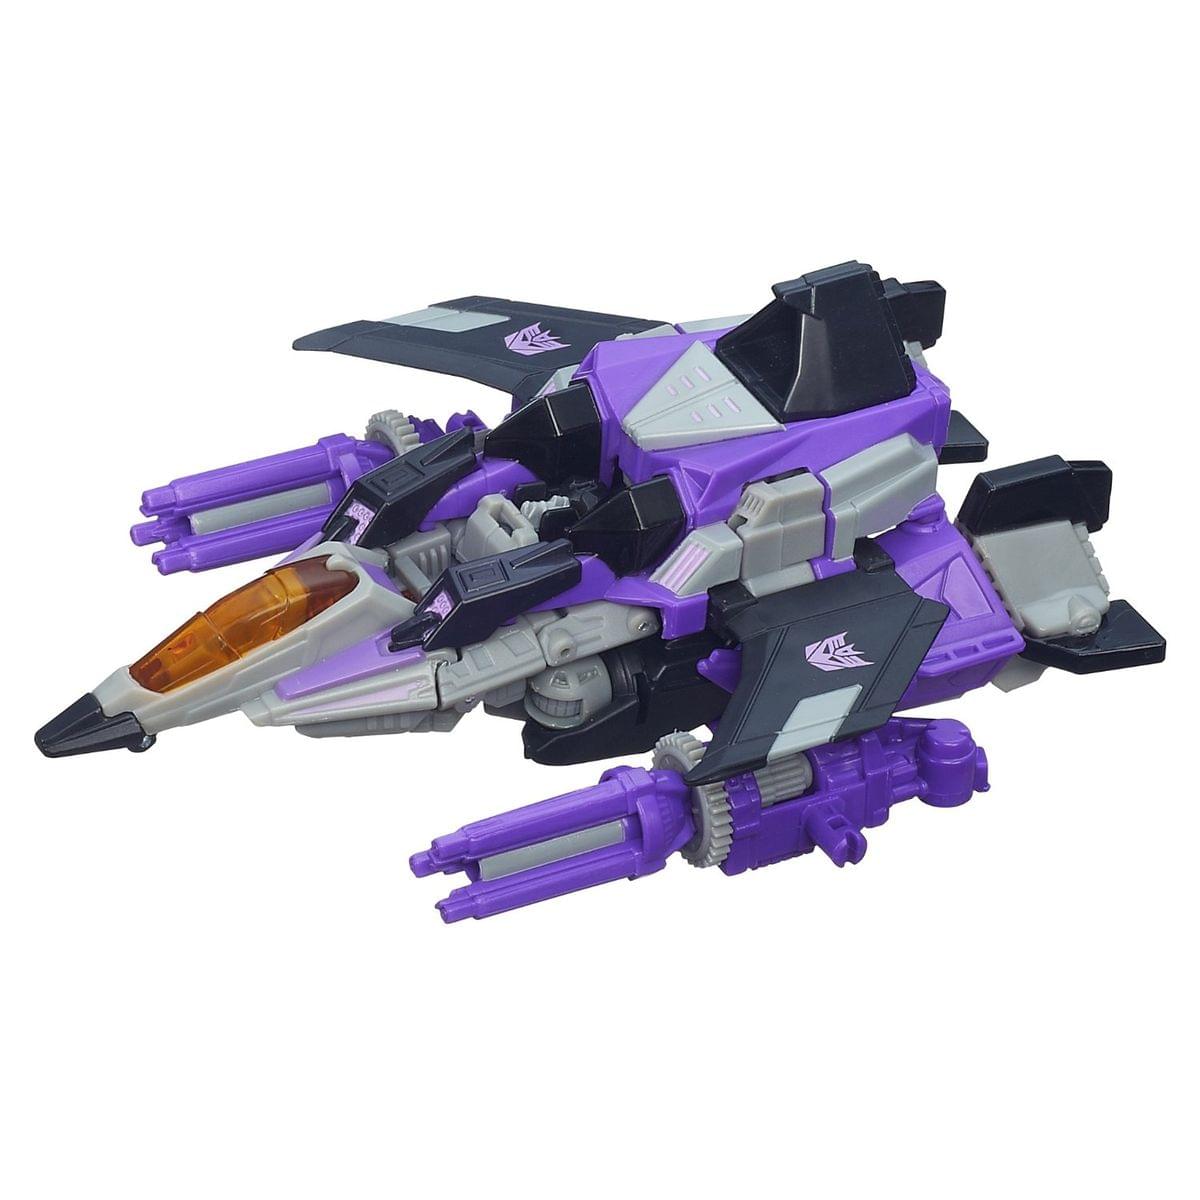 Transformers Generations Deluxe Action Figure Skywarp